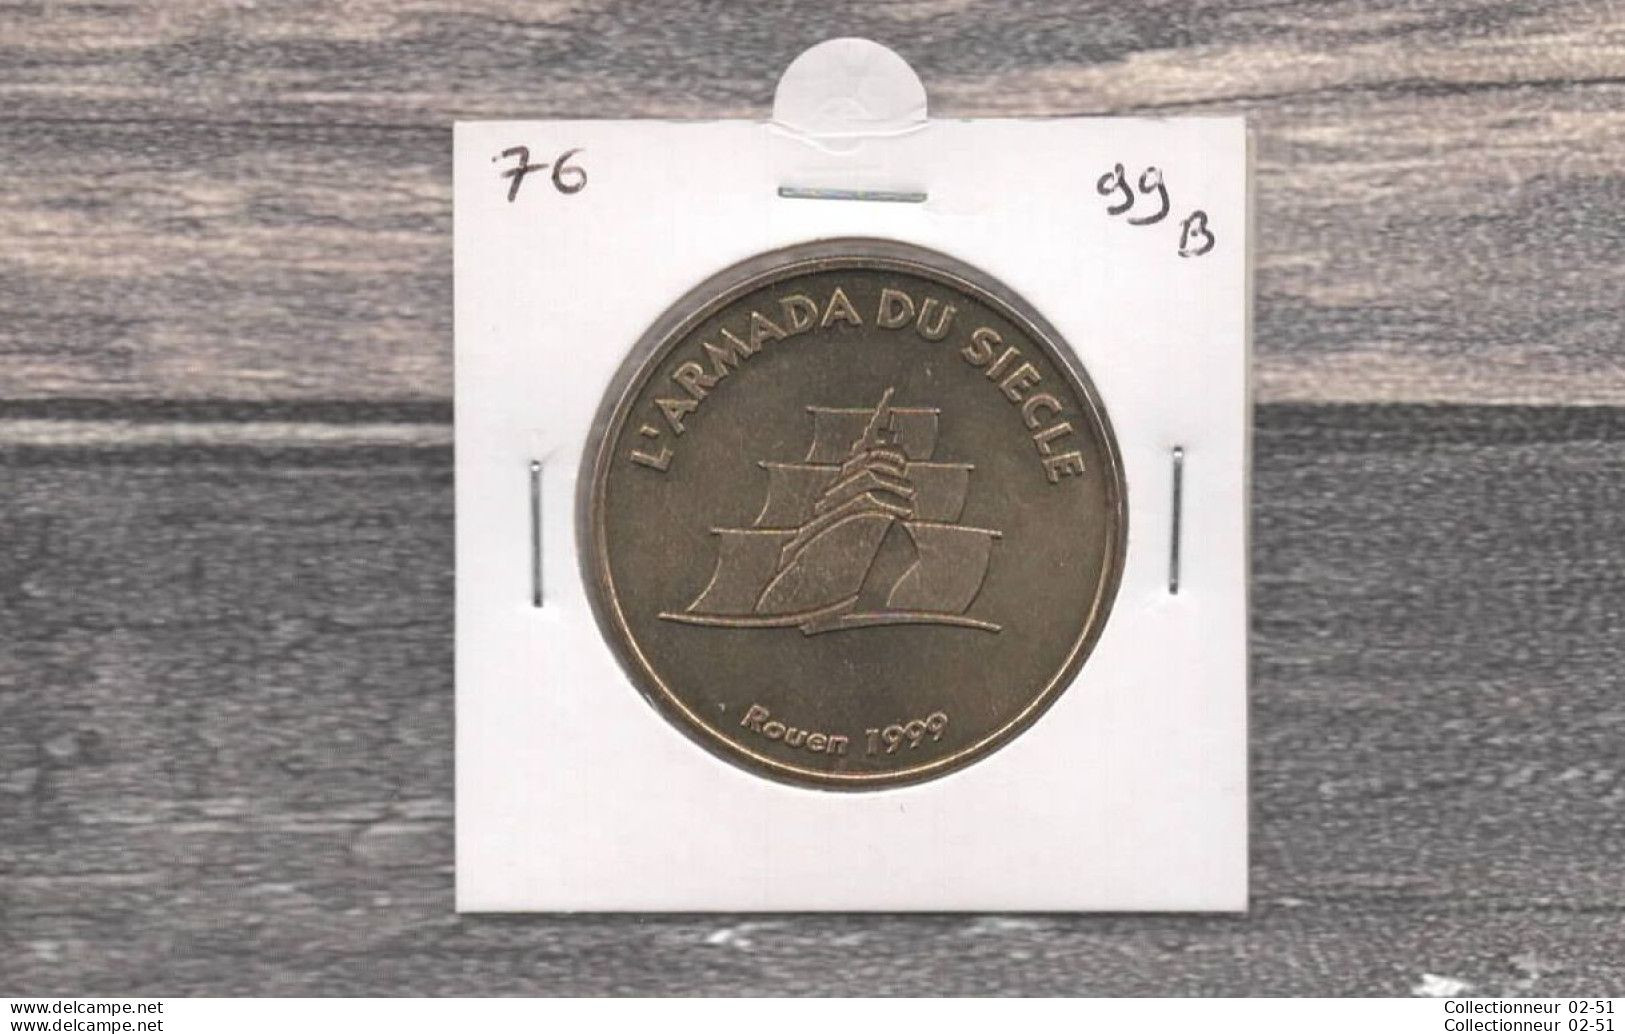 Monnaie De Paris : L'Armada Du Siècle - 1999 - Non Datati